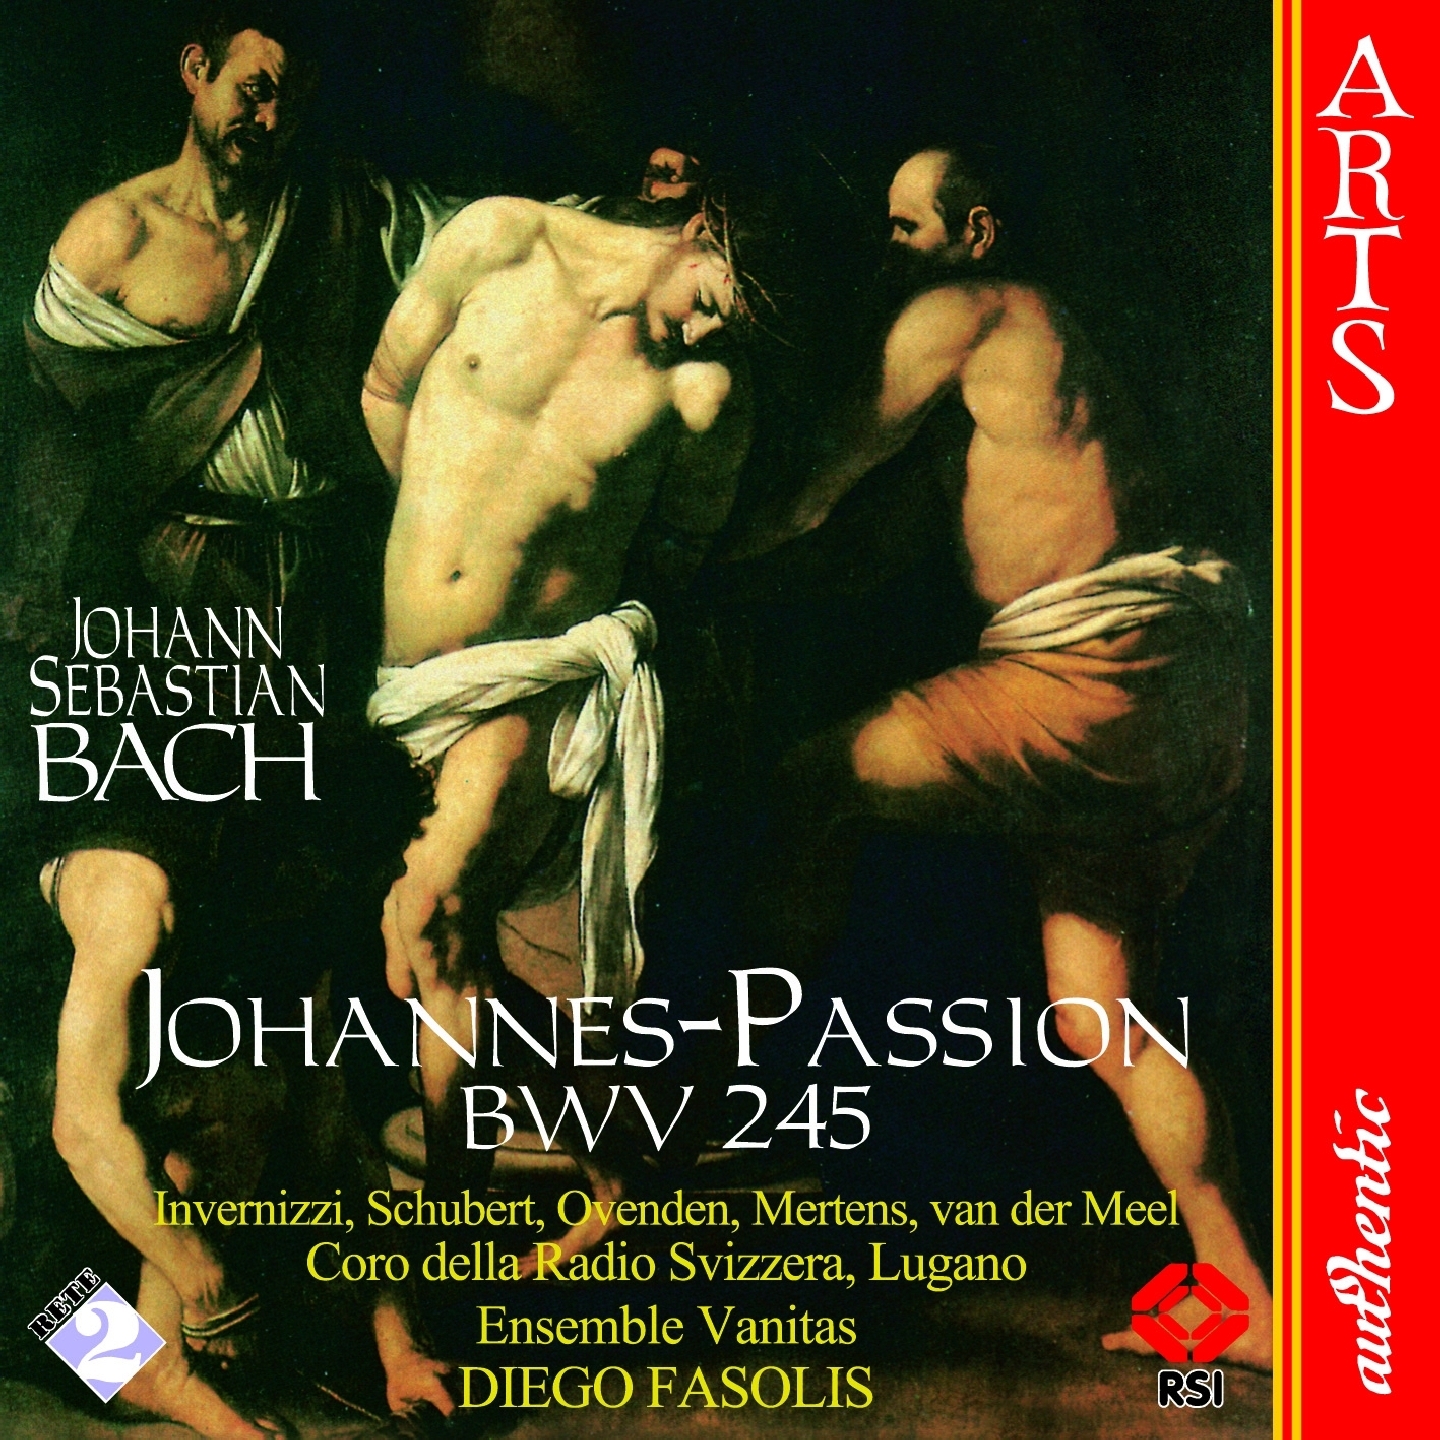 Johannes-Passion, BWV 245, Part II: 26. Choral "In meines Herzens Grunde"